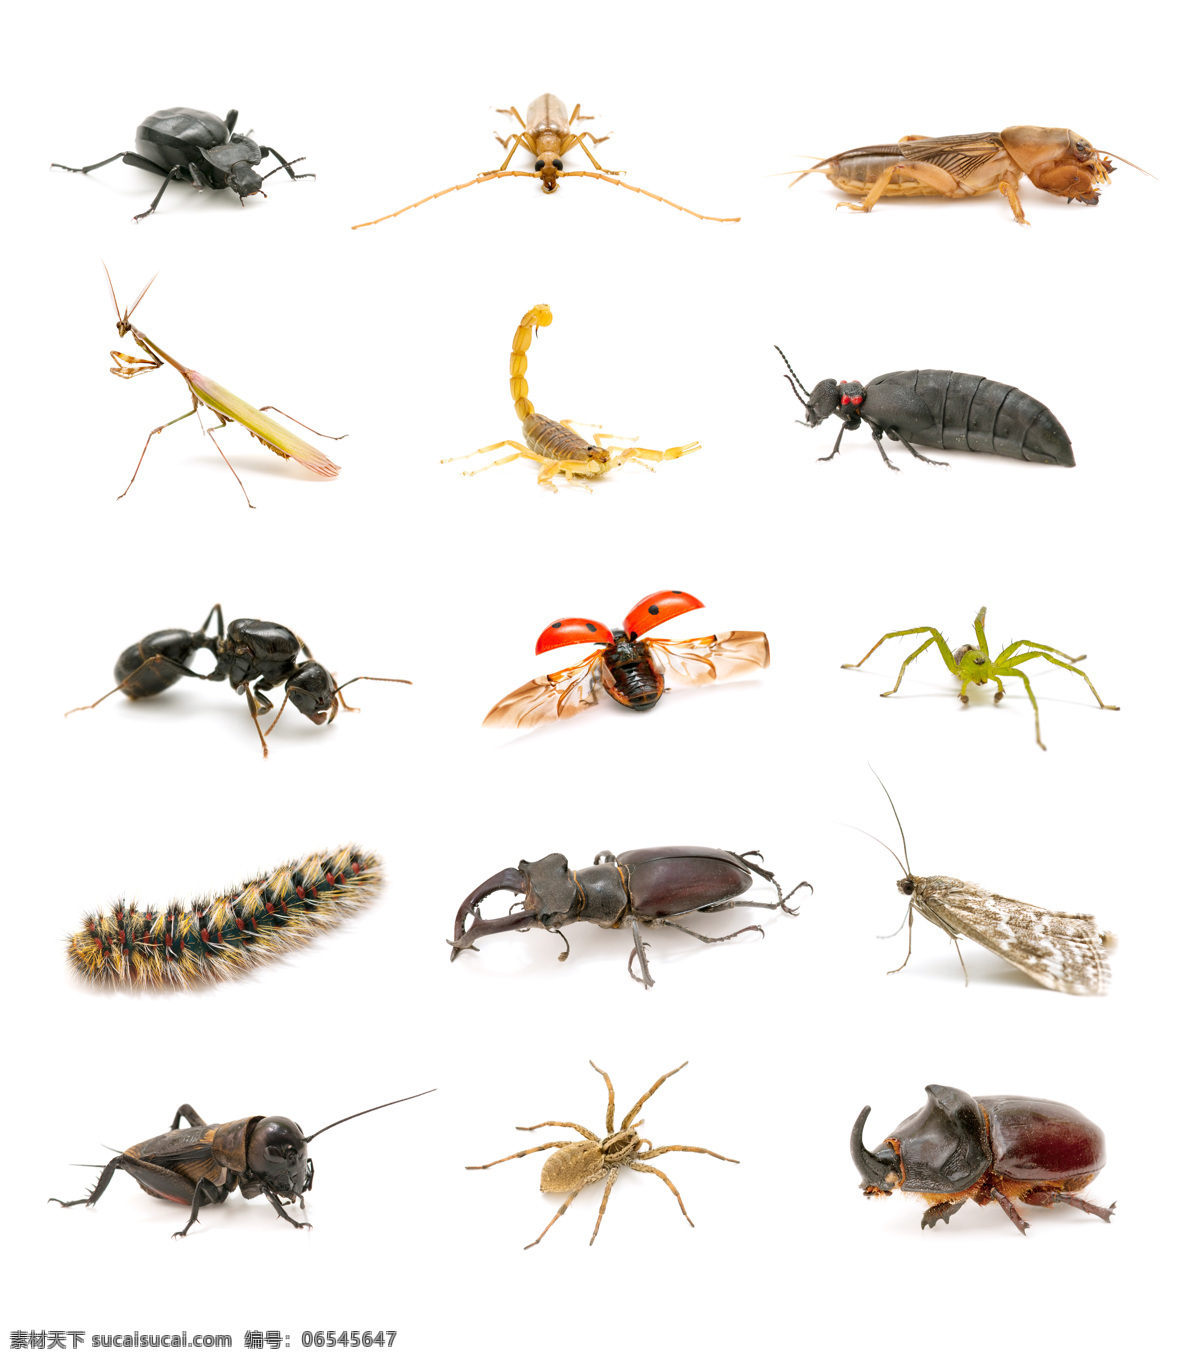 各种 动物 昆虫 蚂蚁 节肢动物 锹甲 毛毛虫 动物摄影 动物世界 动物昆虫 蜘蛛 瓢虫 昆虫世界 生物世界